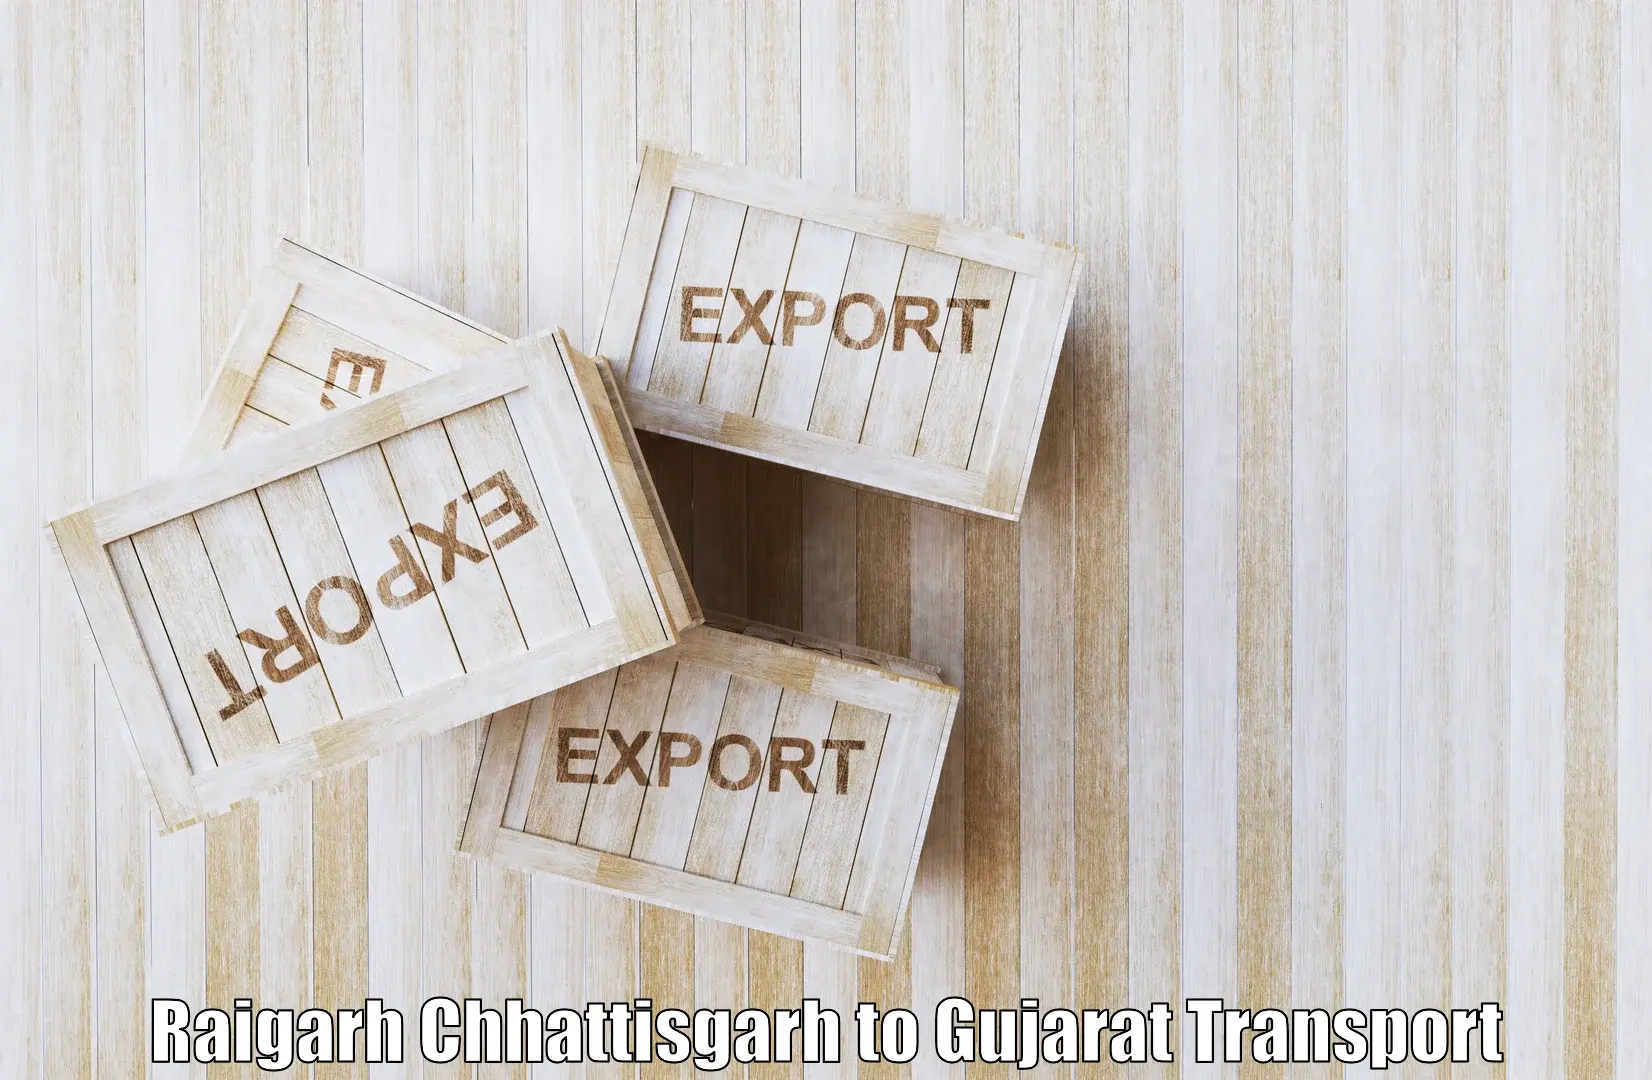 Cargo transportation services in Raigarh Chhattisgarh to IIIT Surat